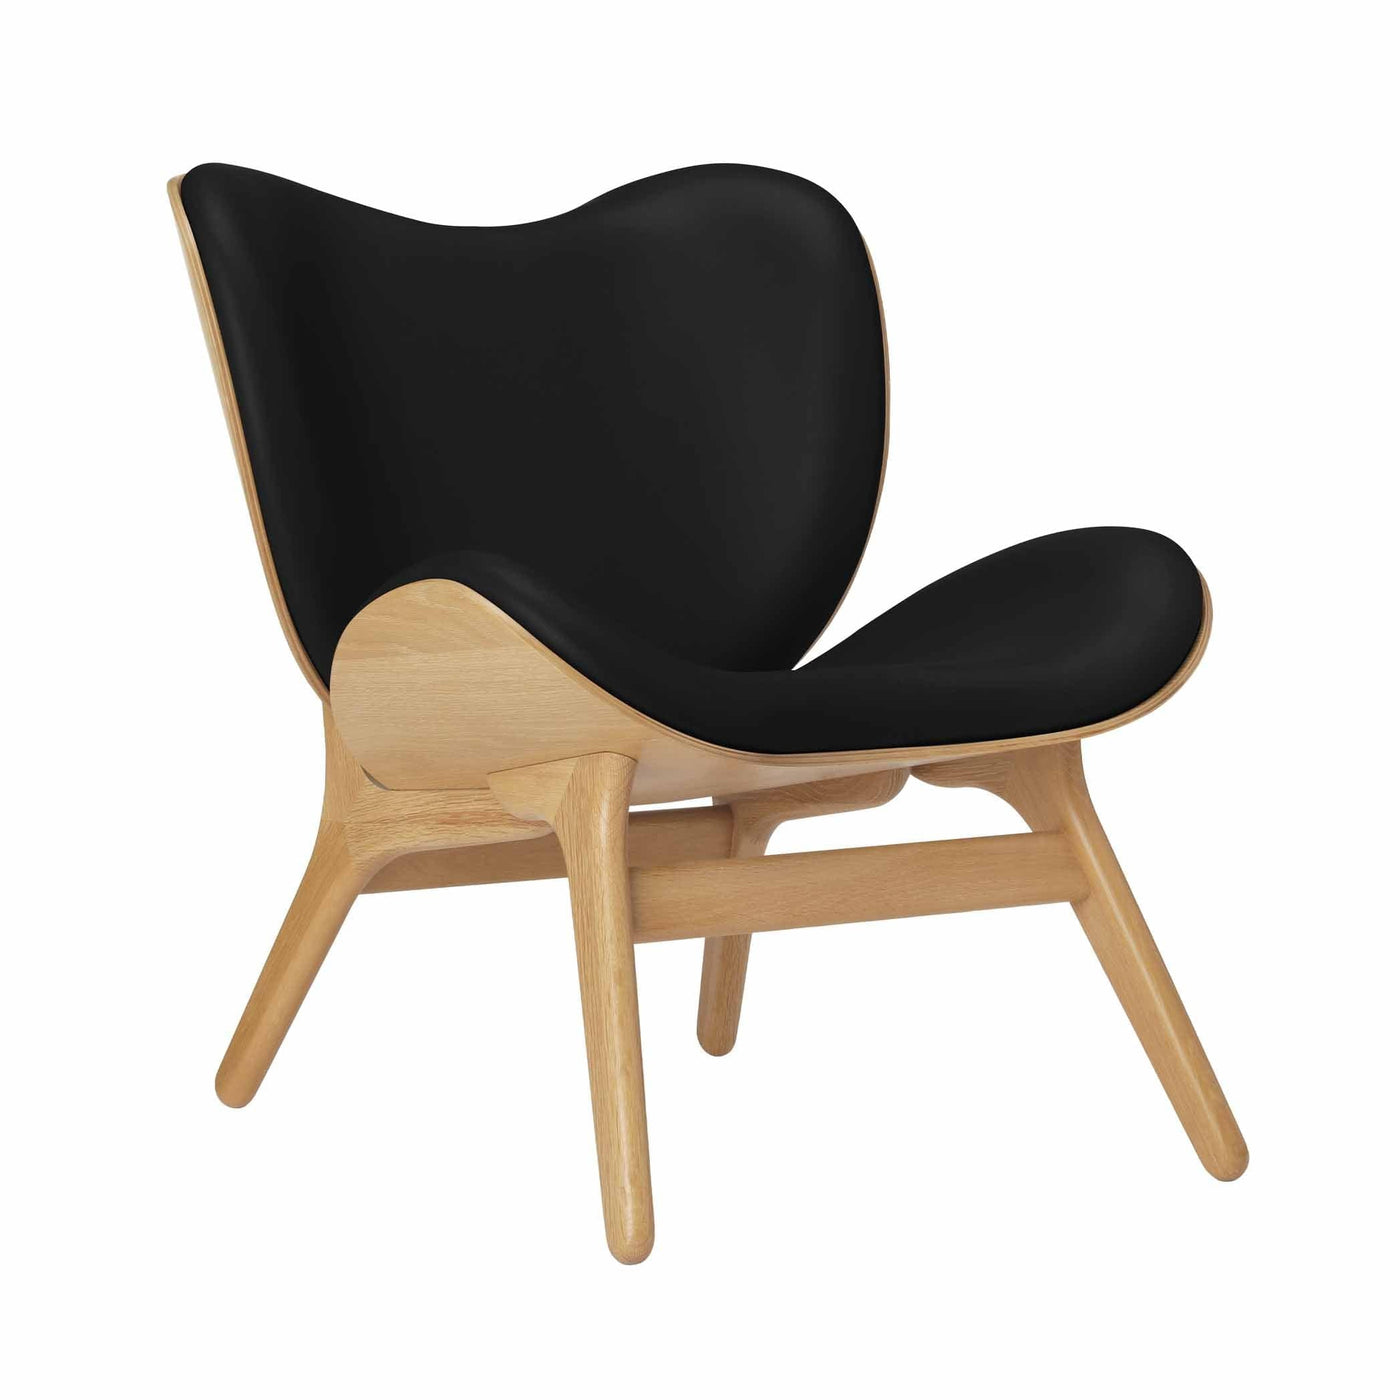 Umage A Conversation Piece Low, fauteuil confortable avec dossier bas, en bois et tissu, chêne, cuir noir